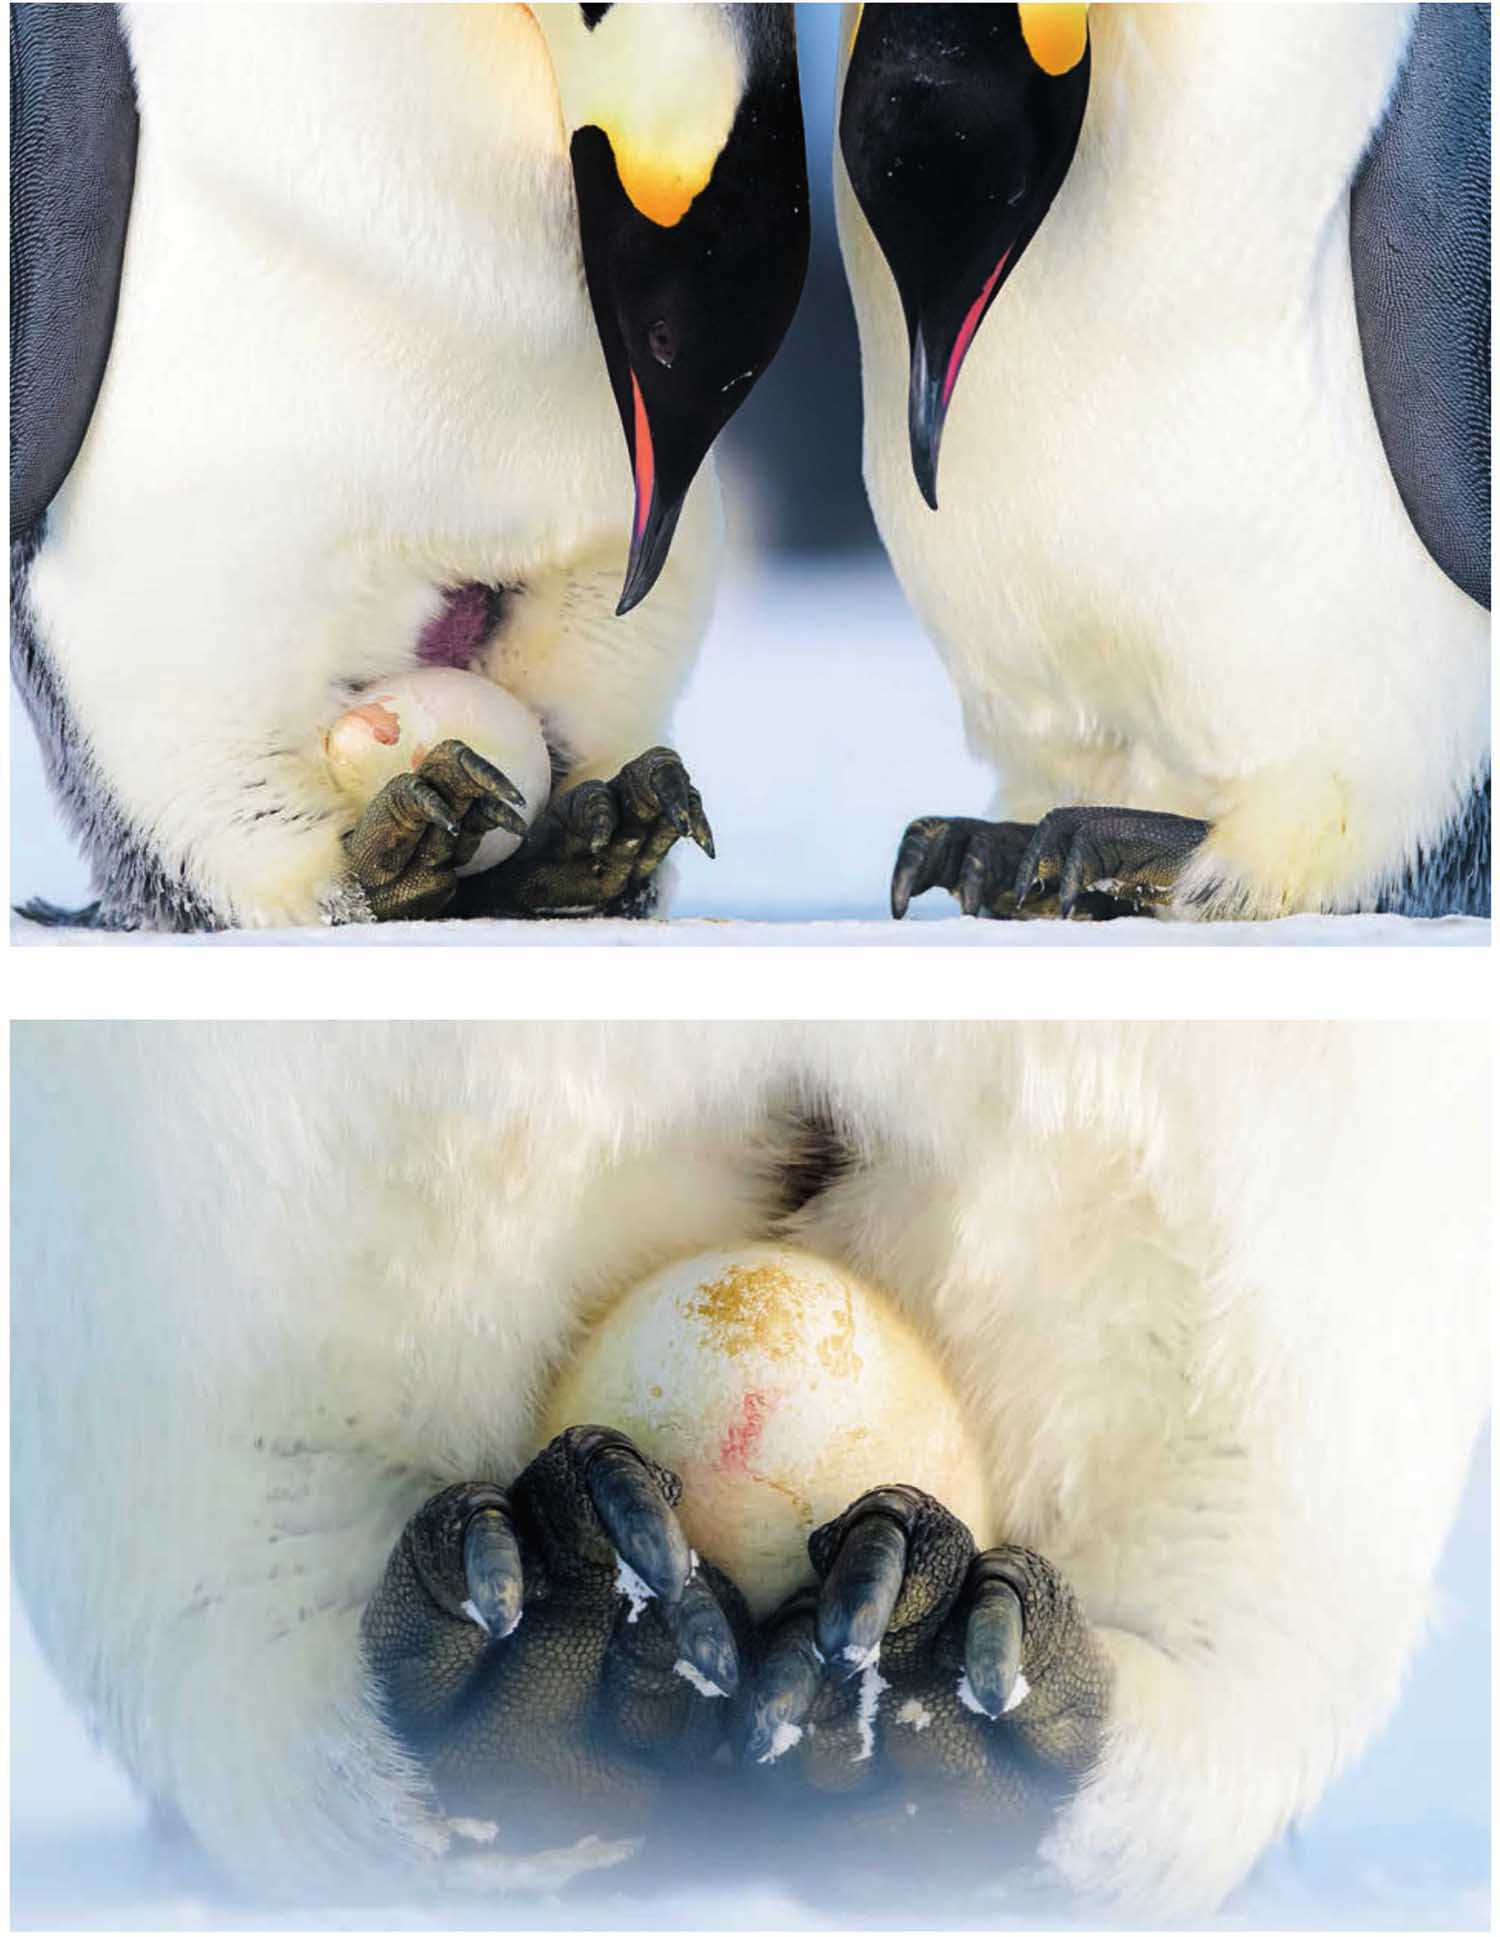 为什么帝企鹅要在寒冷的冬季繁殖?它们如何御寒?